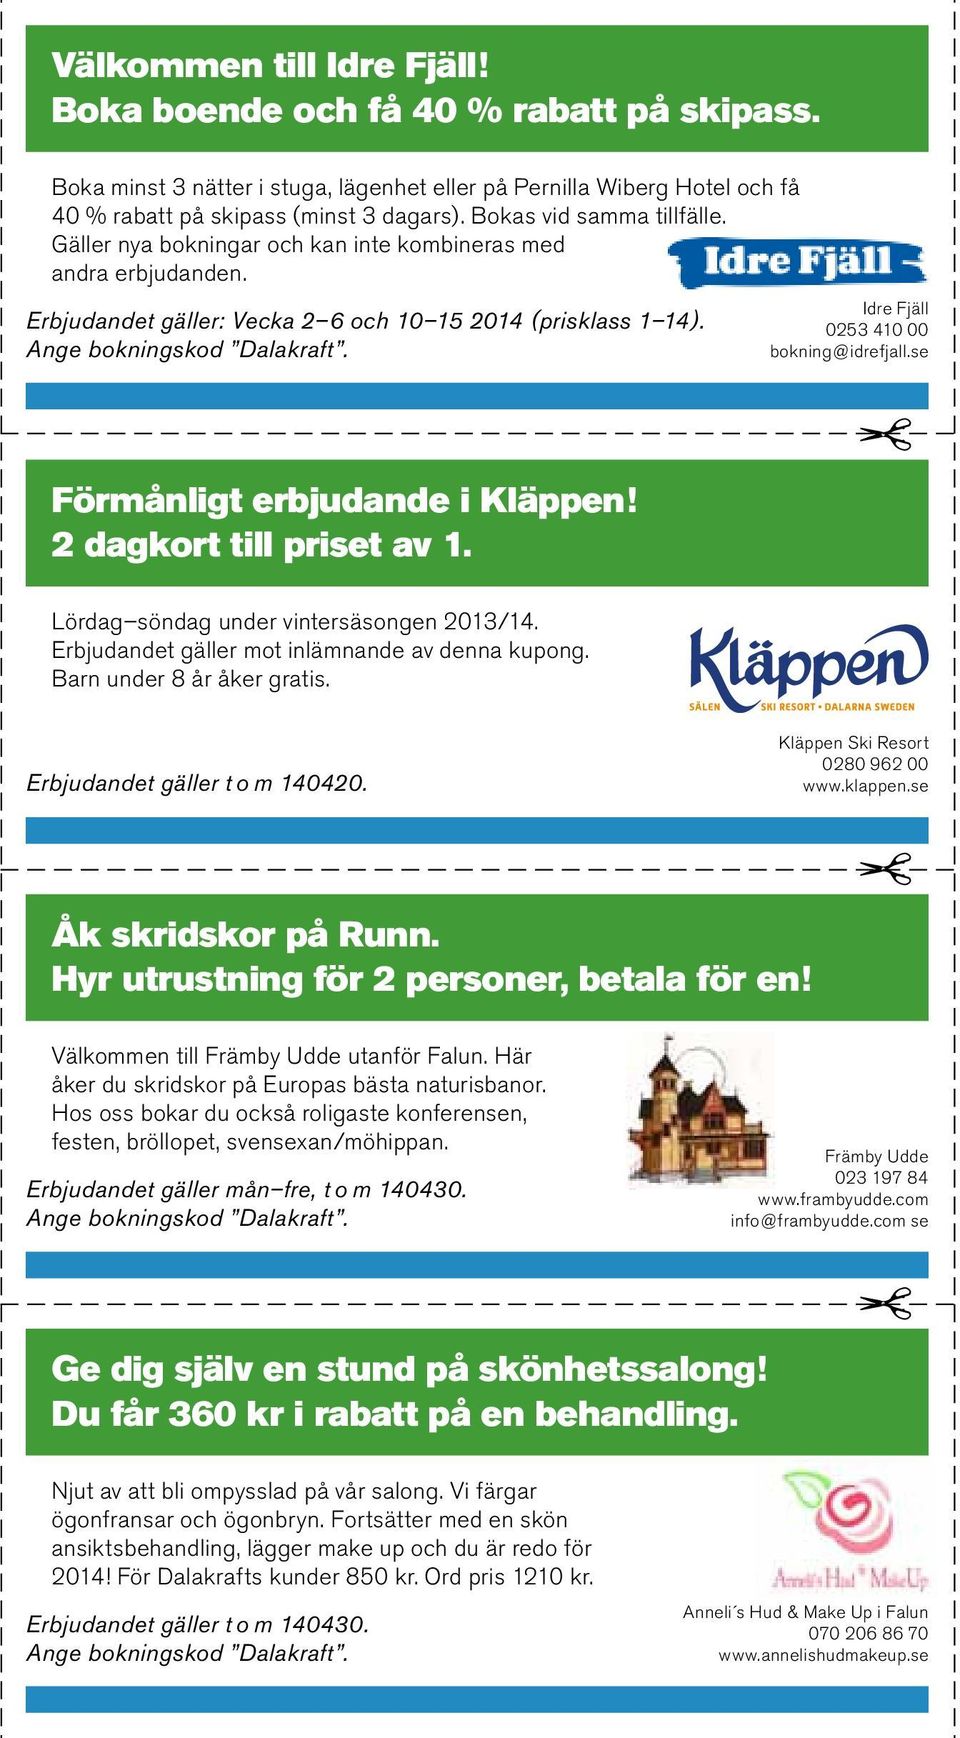 Idre Fjäll 0253 410 00 bokning@idrefjall.se Förmånligt erbjudande i Kläppen! 2 dagkort till priset av 1. Lördag söndag under vintersäsongen 2013/14. Erbjudandet gäller mot inlämnande av denna kupong.